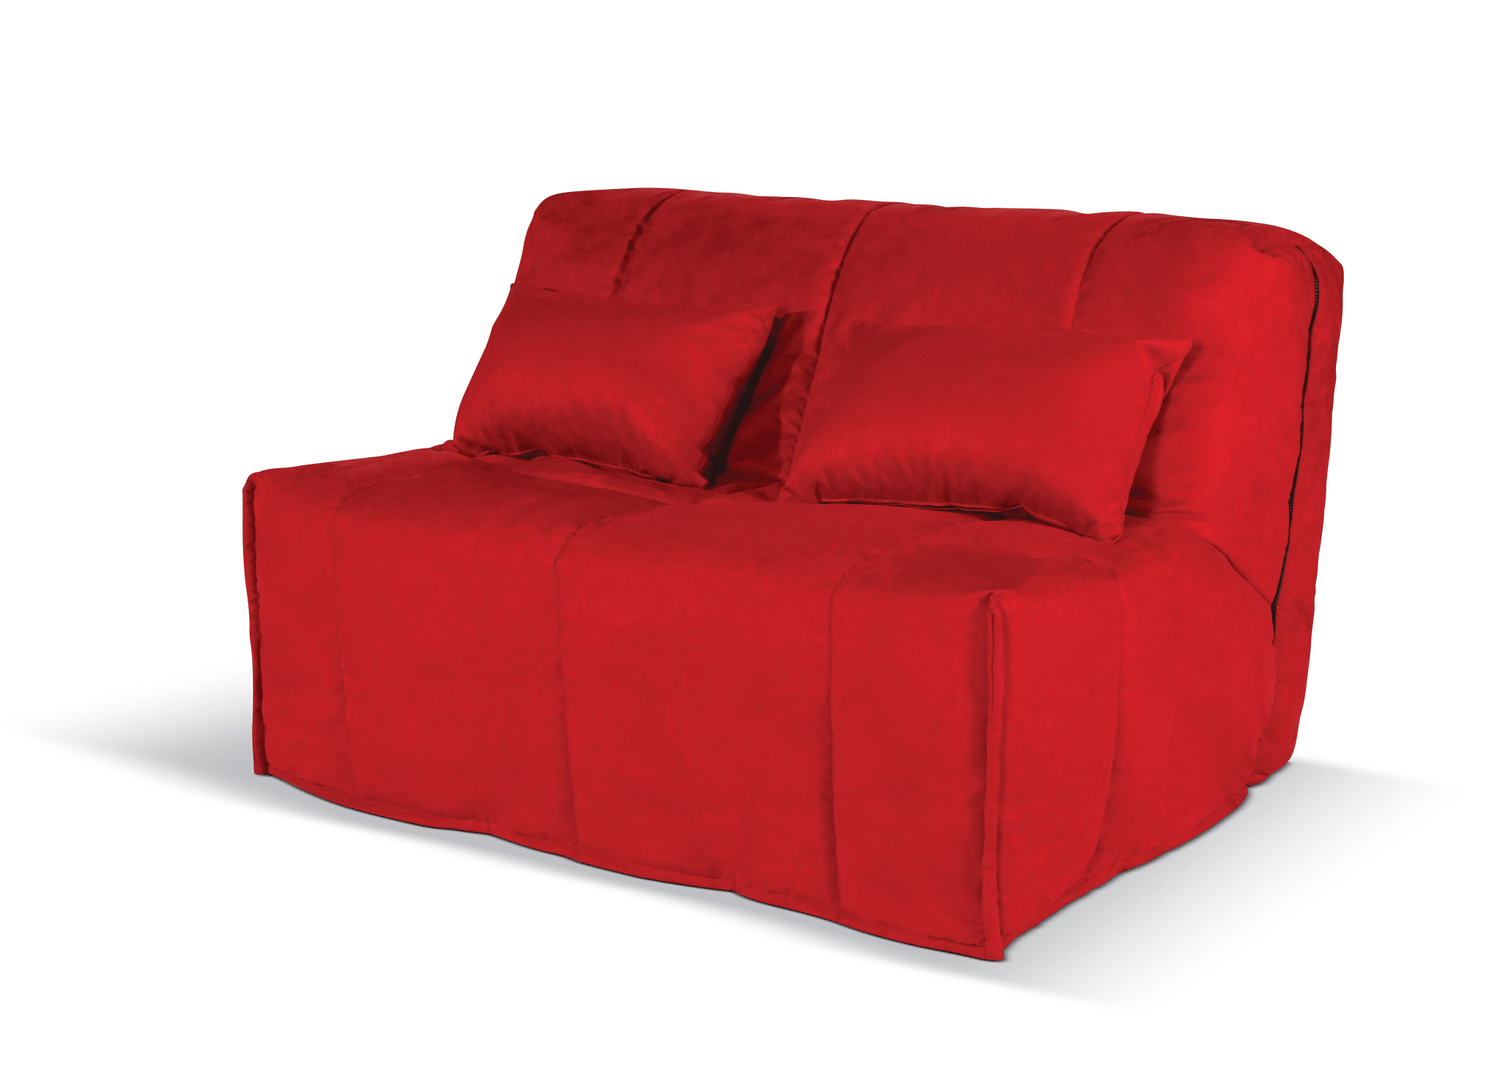 Clic clac rouge : le choix glamour et cosy pour votre canapé